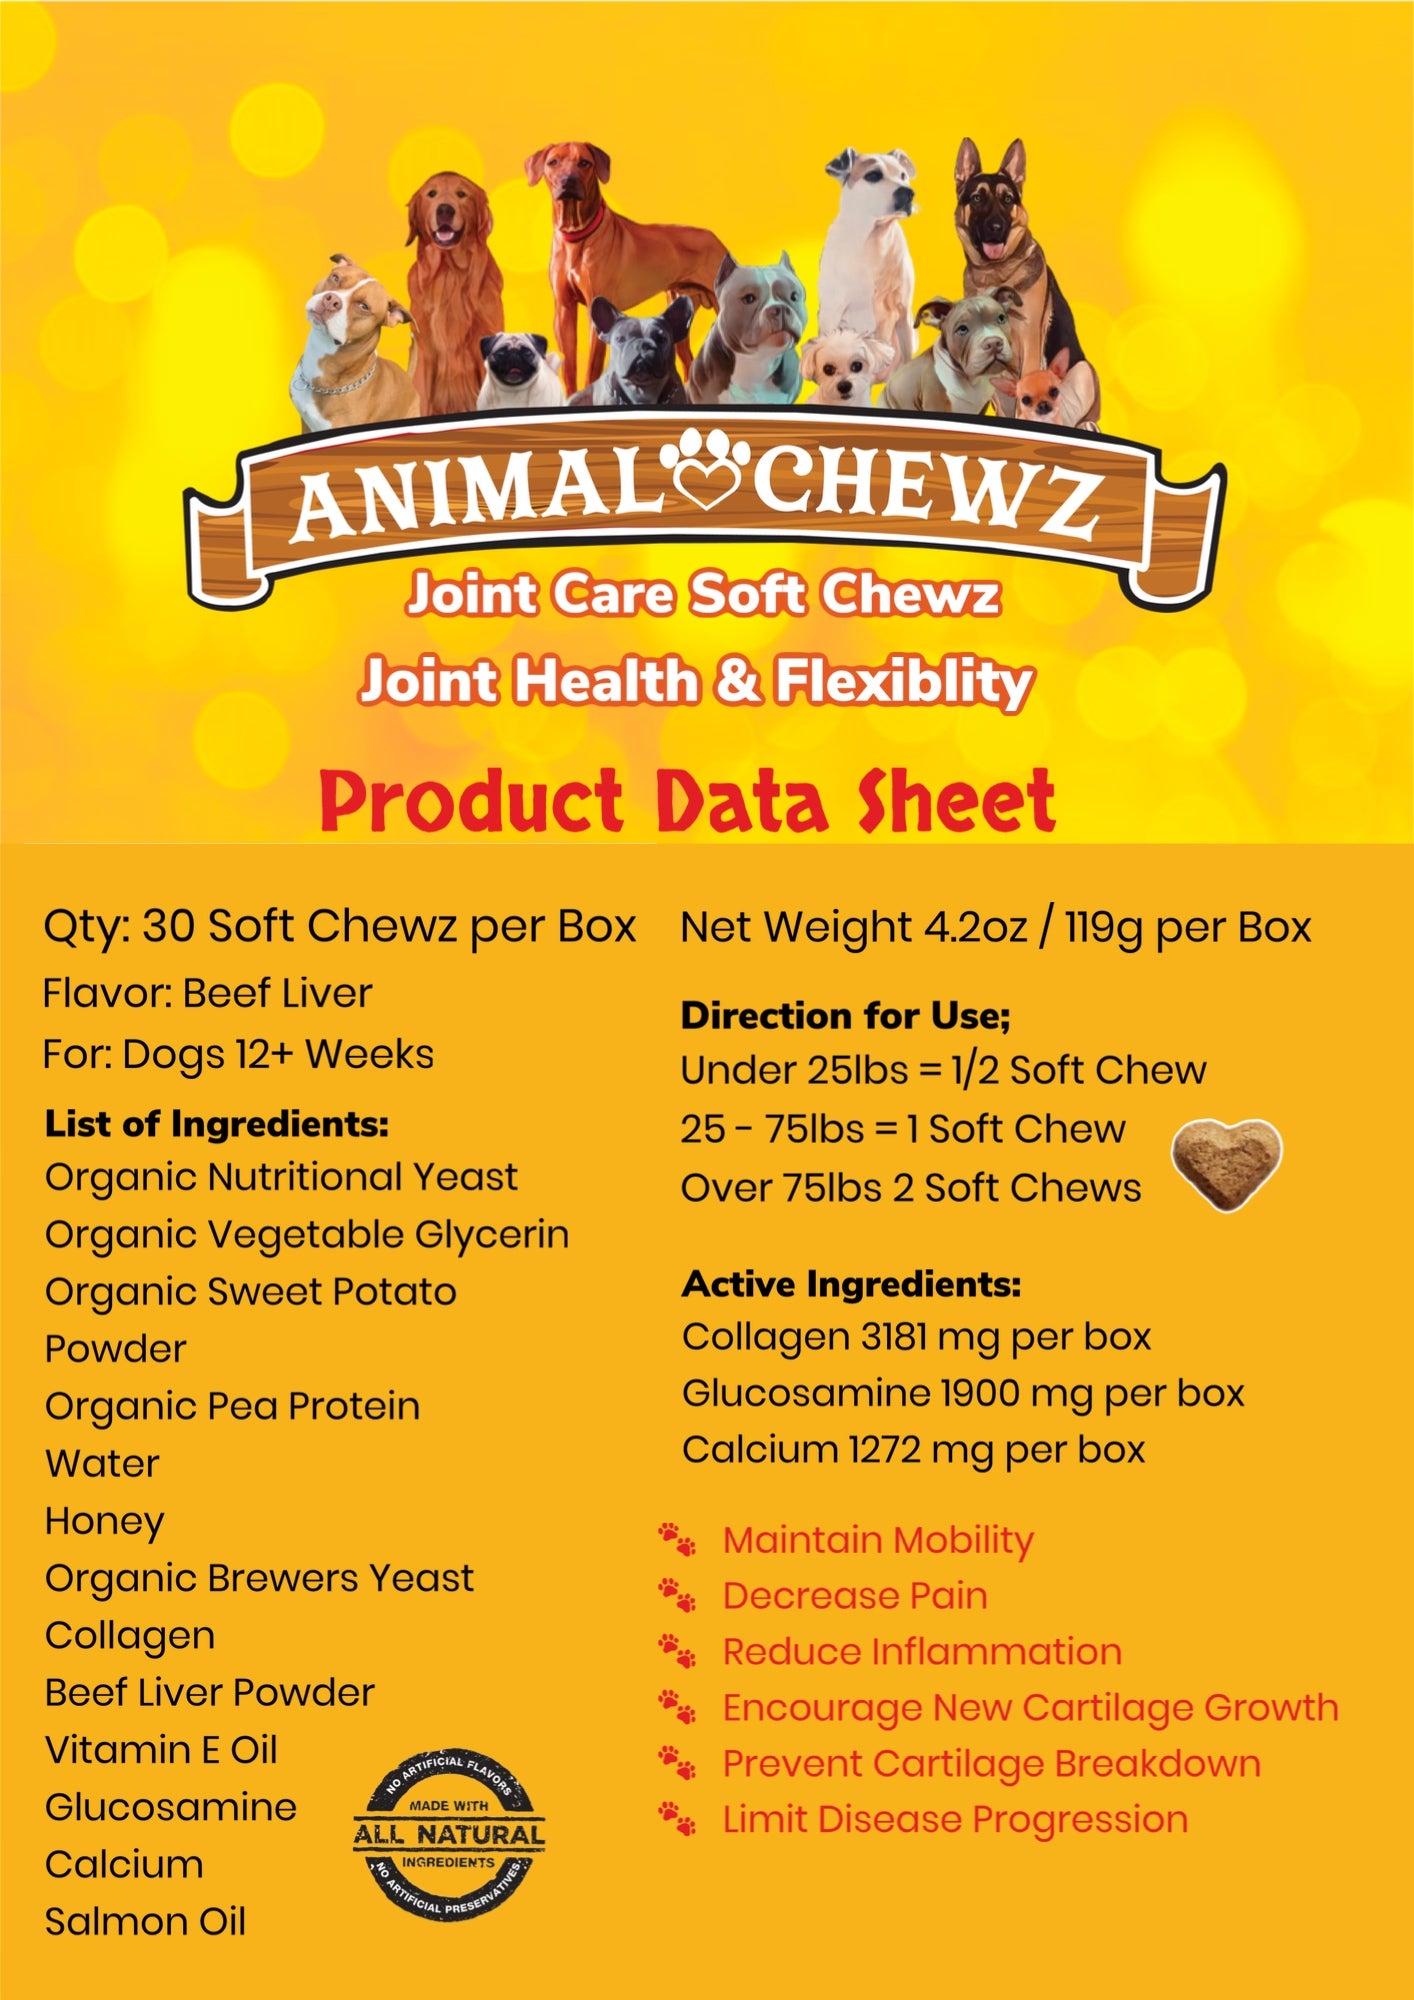 Animal Chewz Skin & Coat Soft Chewz